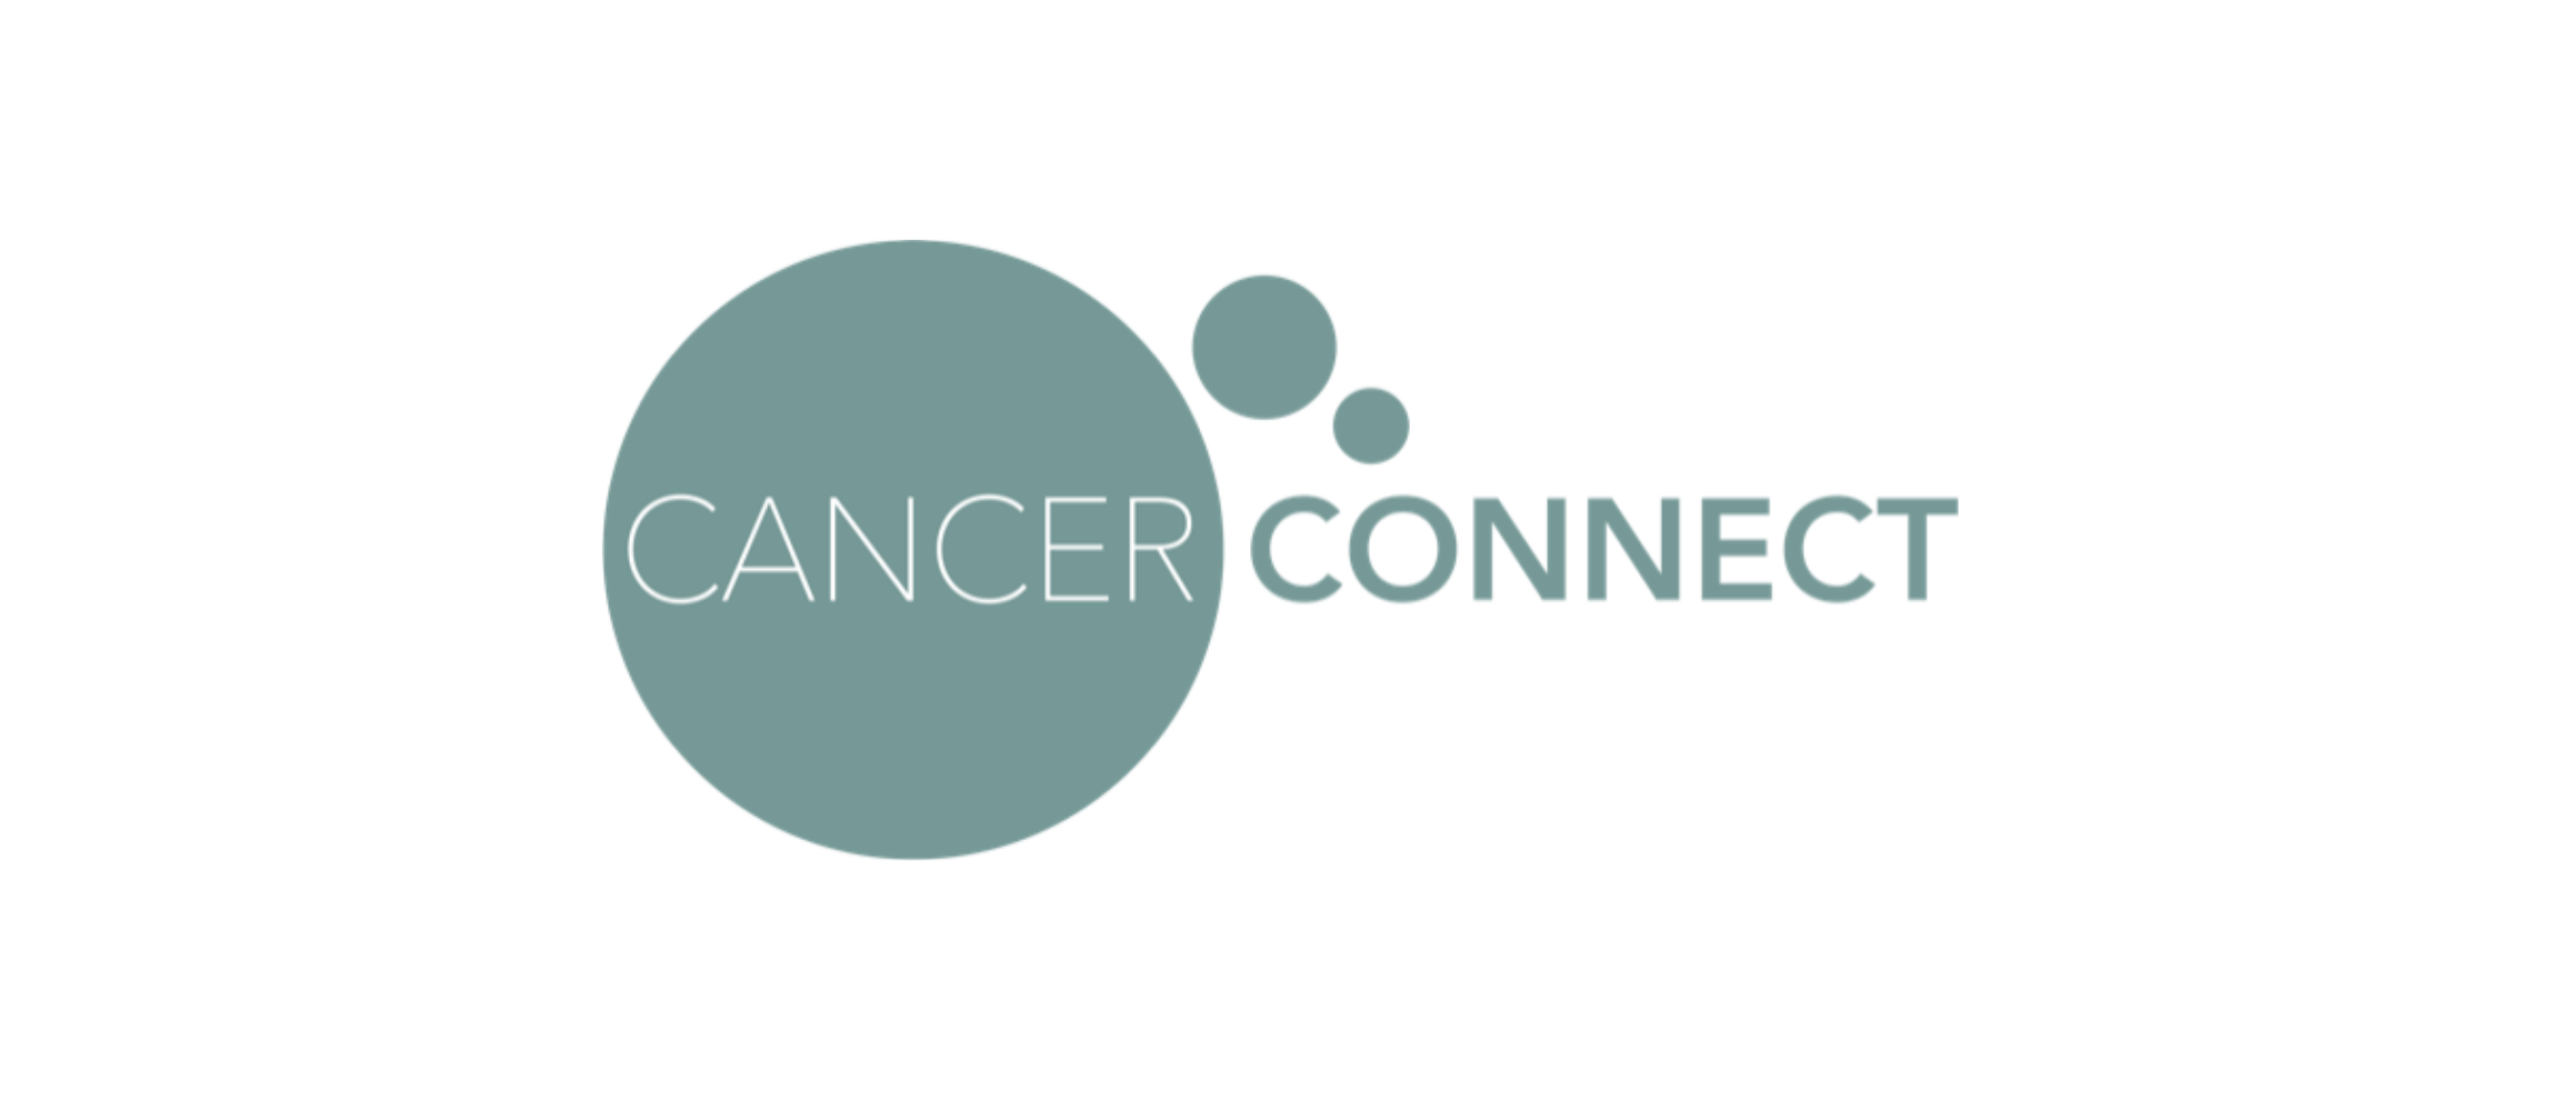 Cancer Connect | Stel jouw vragen aan een ervaringsdeskundige